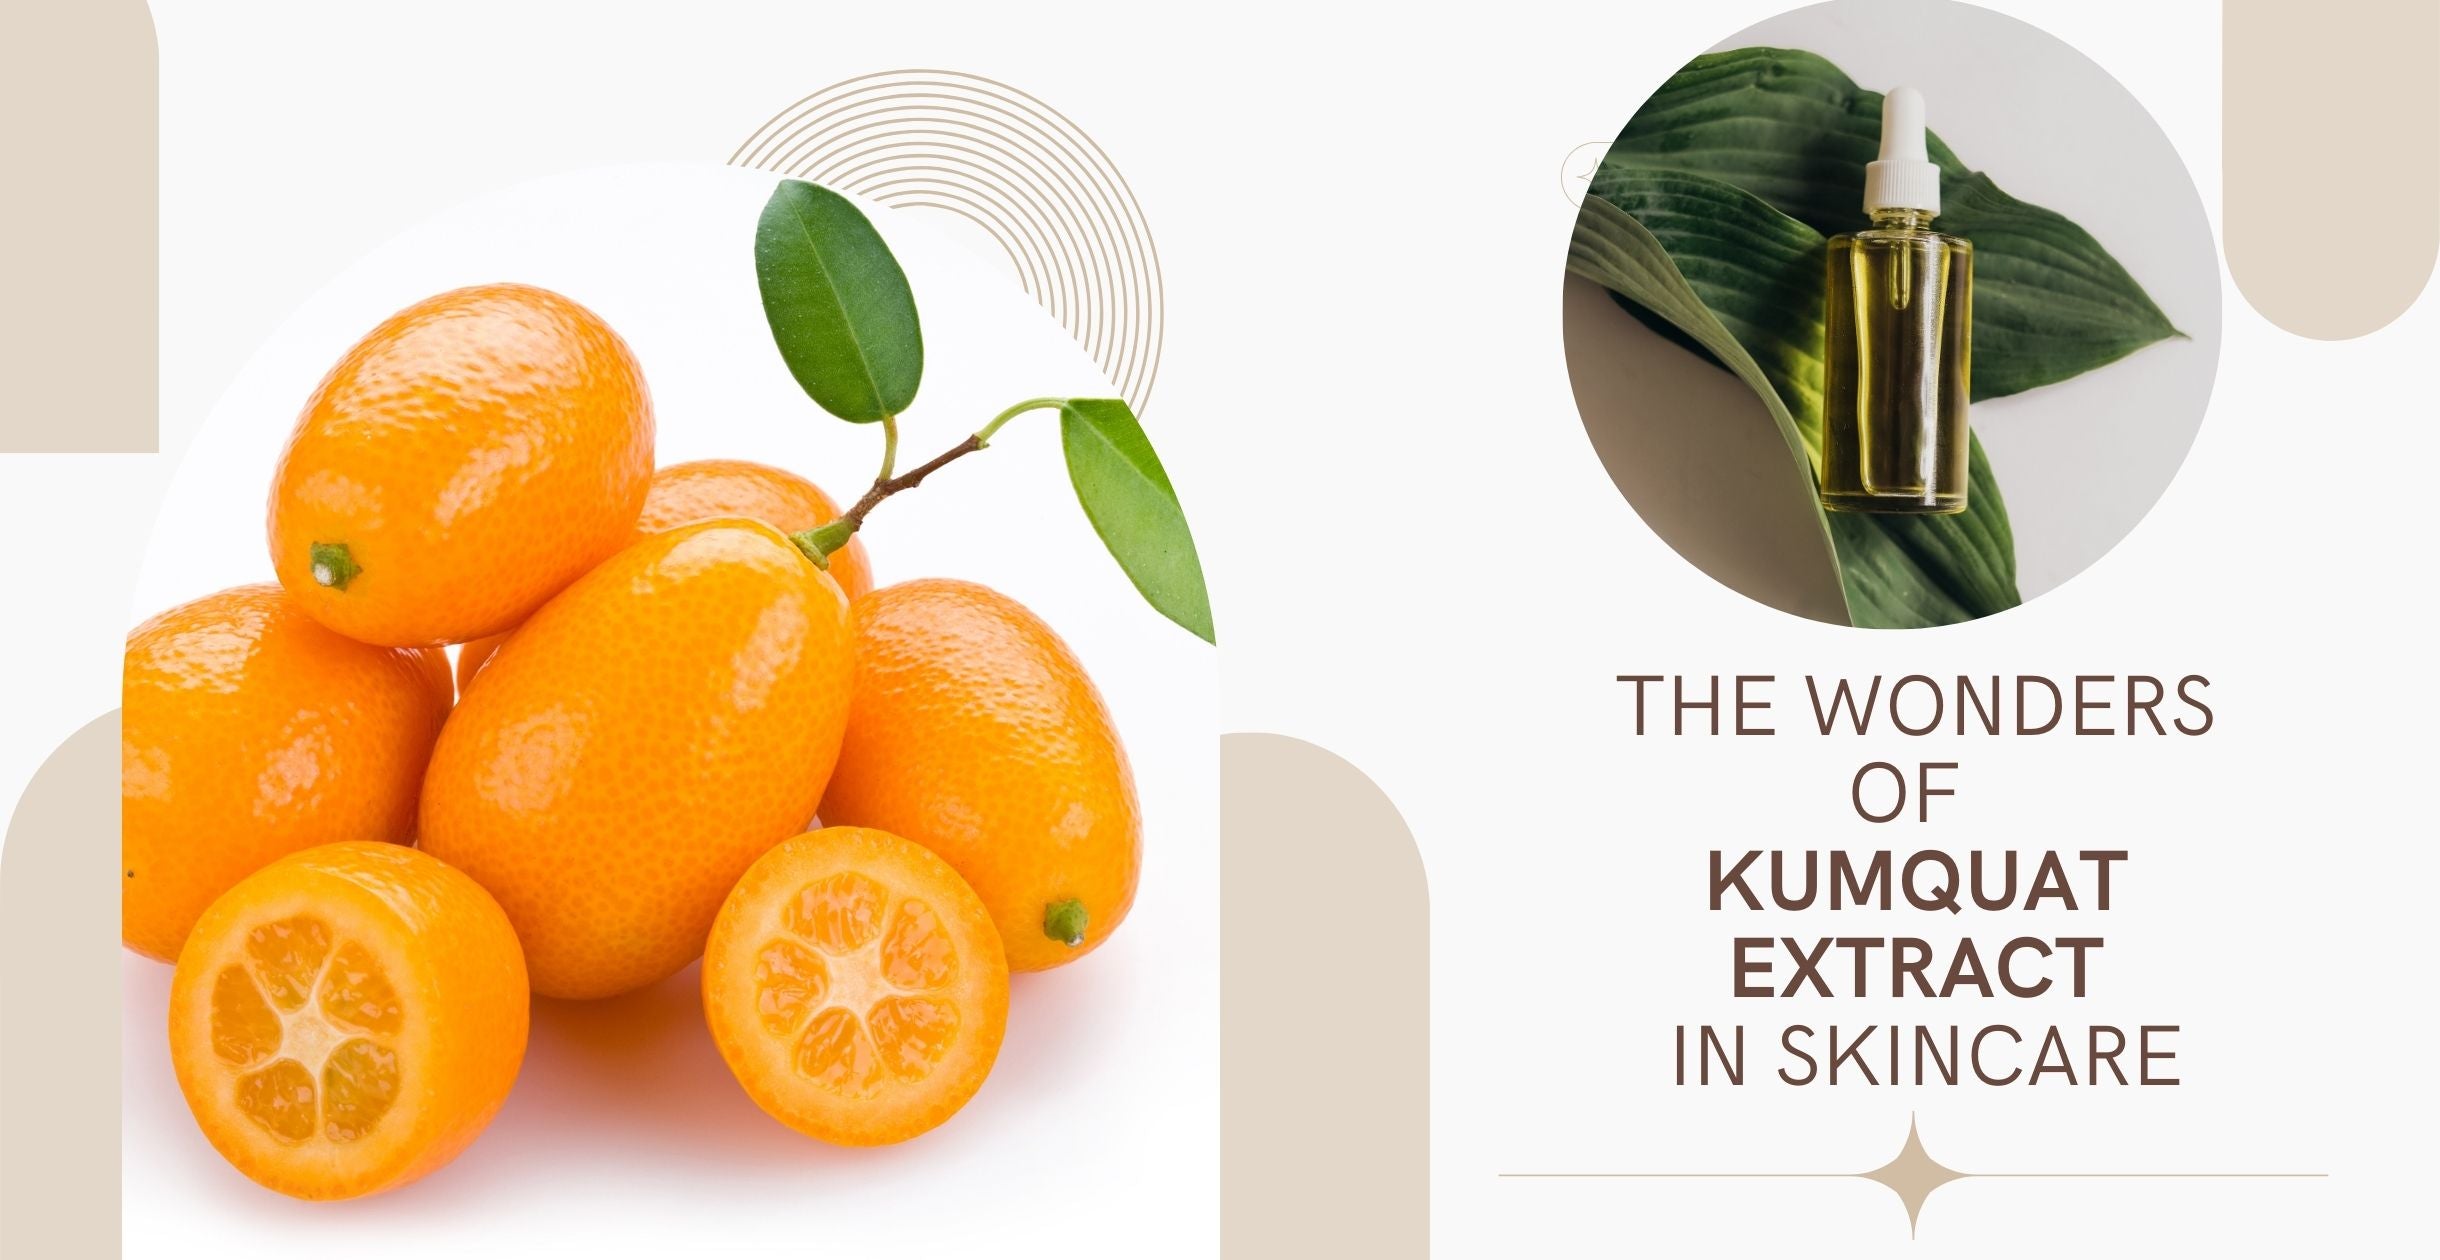 The Wonders of Kumquat Extract in Skincare